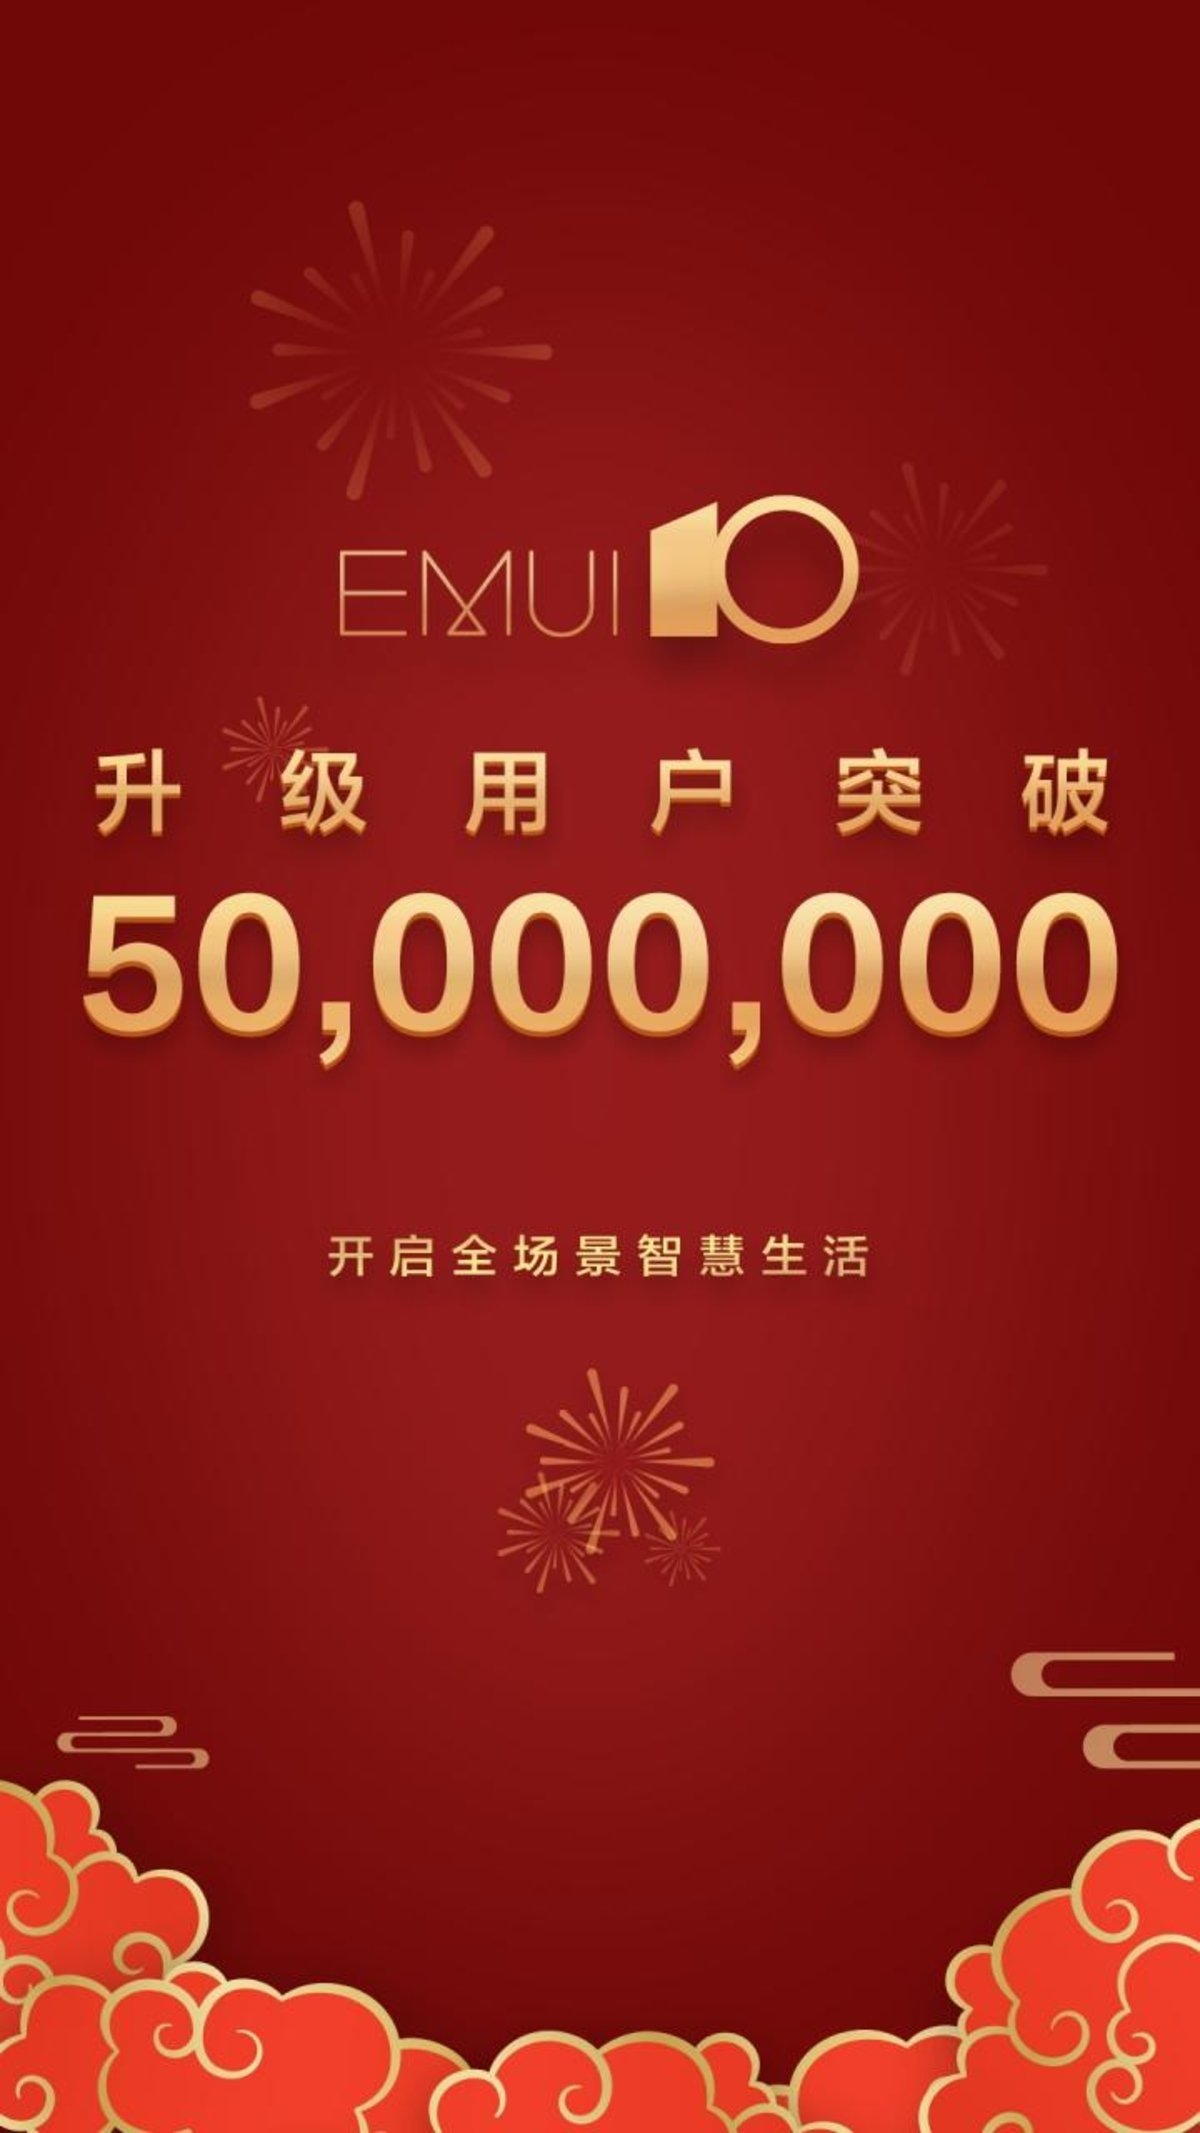 EMUI 10 alcanza los 50 millones de usuarios